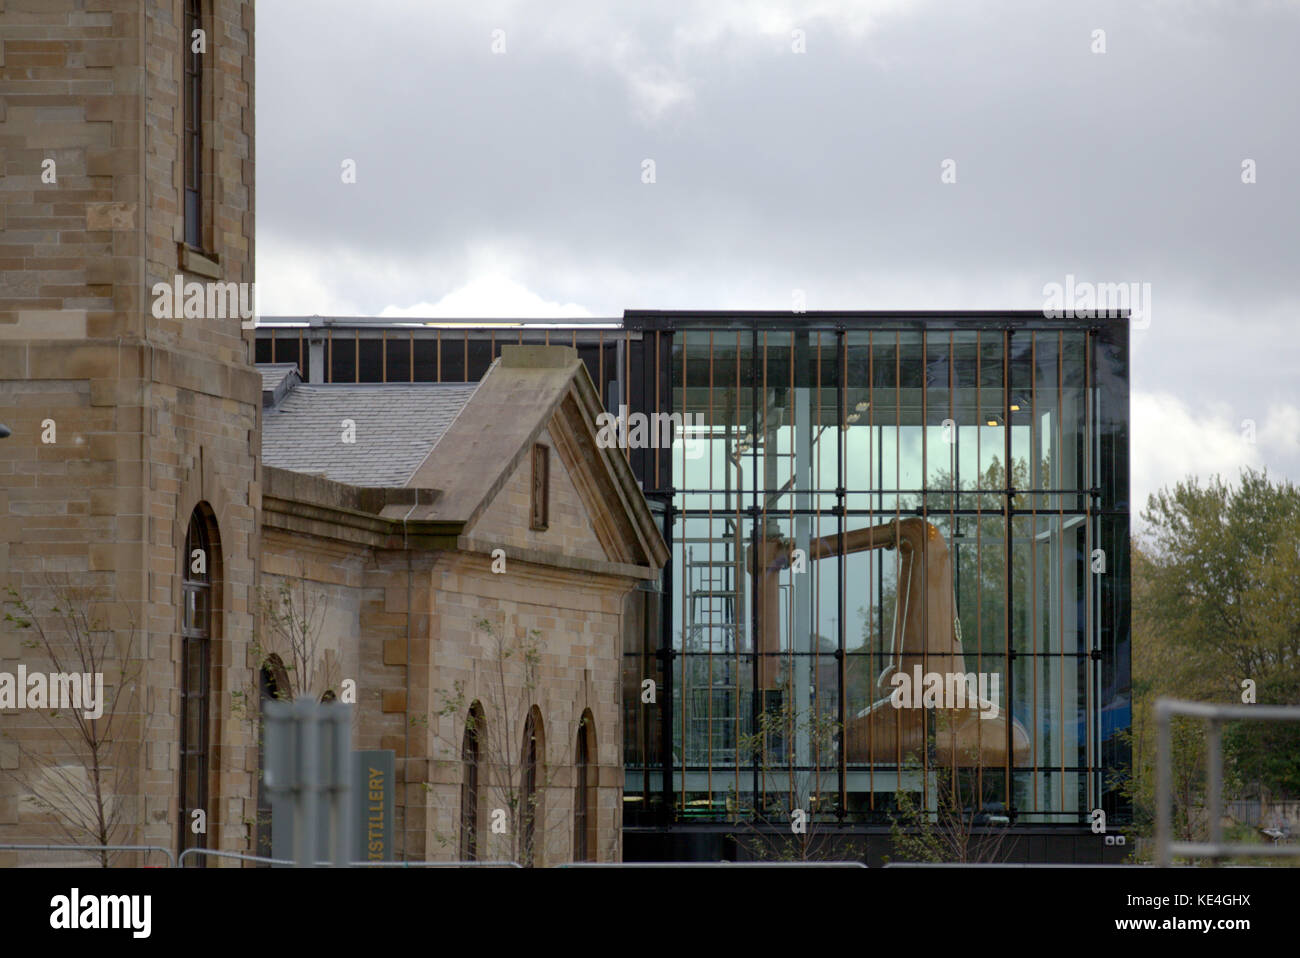 La distillerie de whisky clydeside encore à Glasgow, Ecosse Banque D'Images